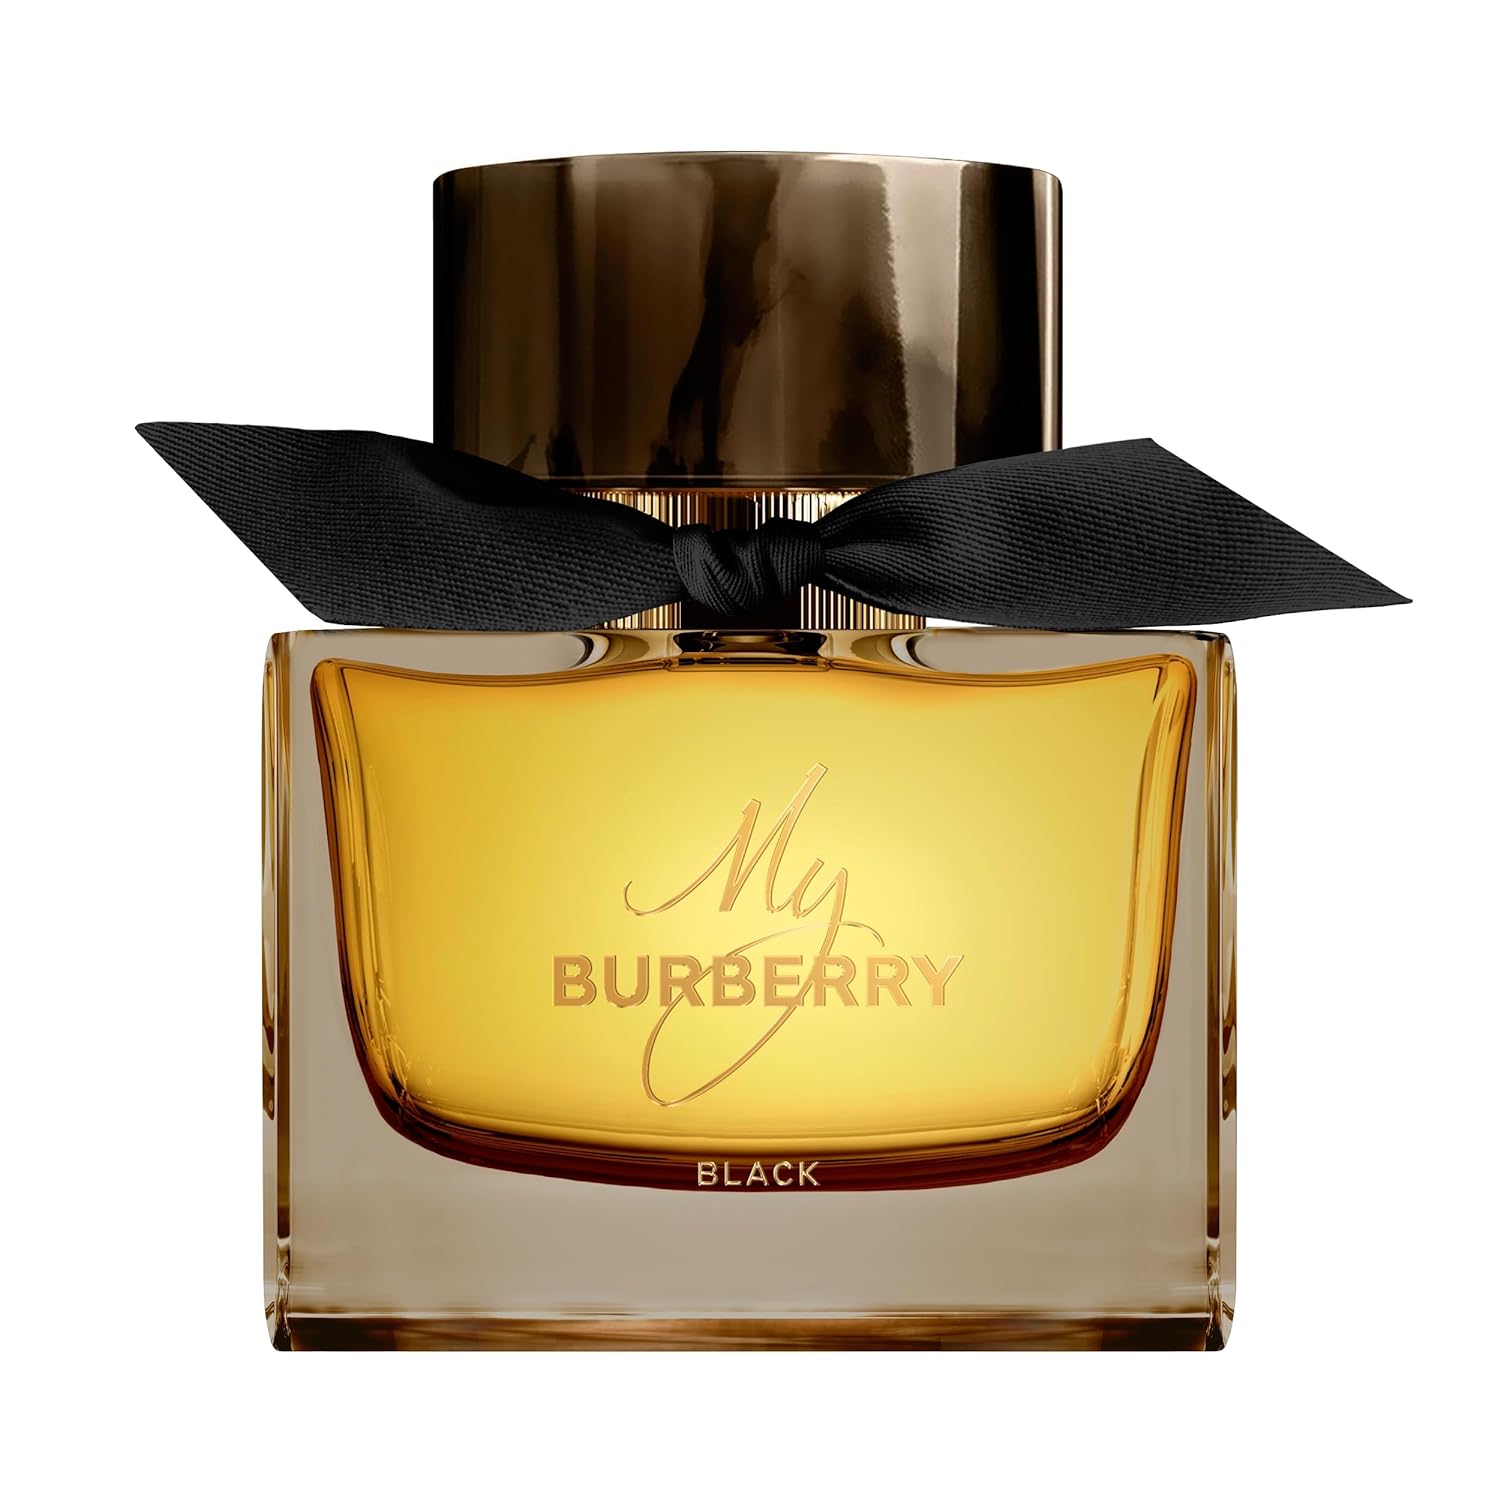 Burberry My Burberry Black Eau de Parfum Spray 90 ml for Women